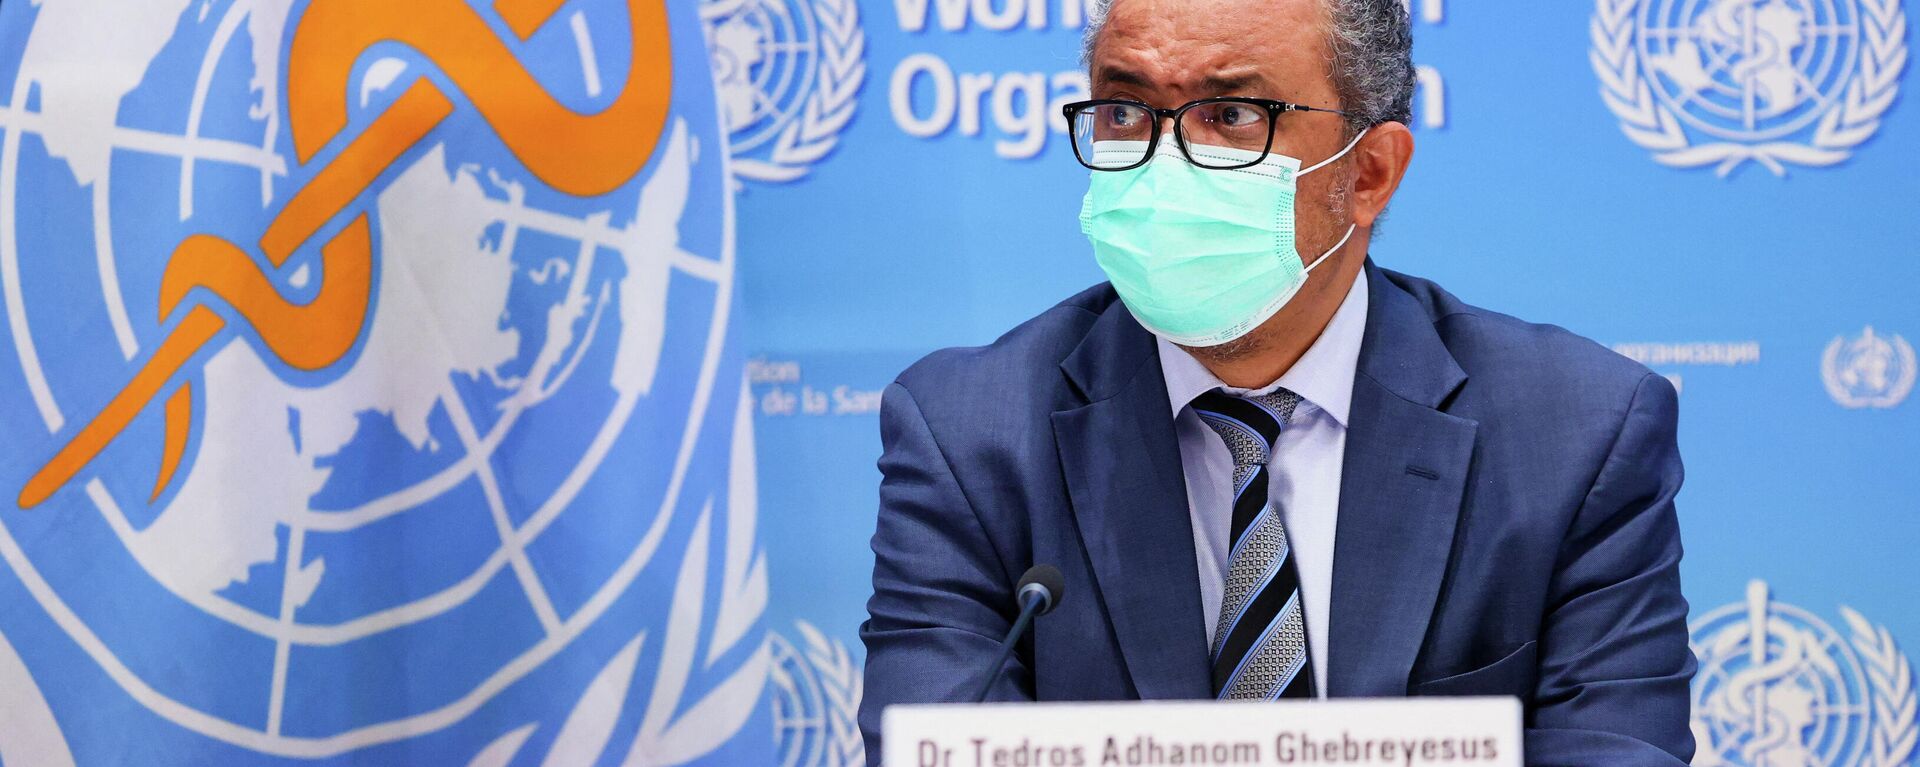 تيدروس أدهانوم غيبريسوس، المدير العام لمنظمة الصحة العالمية، يحضر مؤتمرا صحفيا في جنيف، سويسرا، 20 ديسمبر 2021 - سبوتنيك عربي, 1920, 16.01.2022